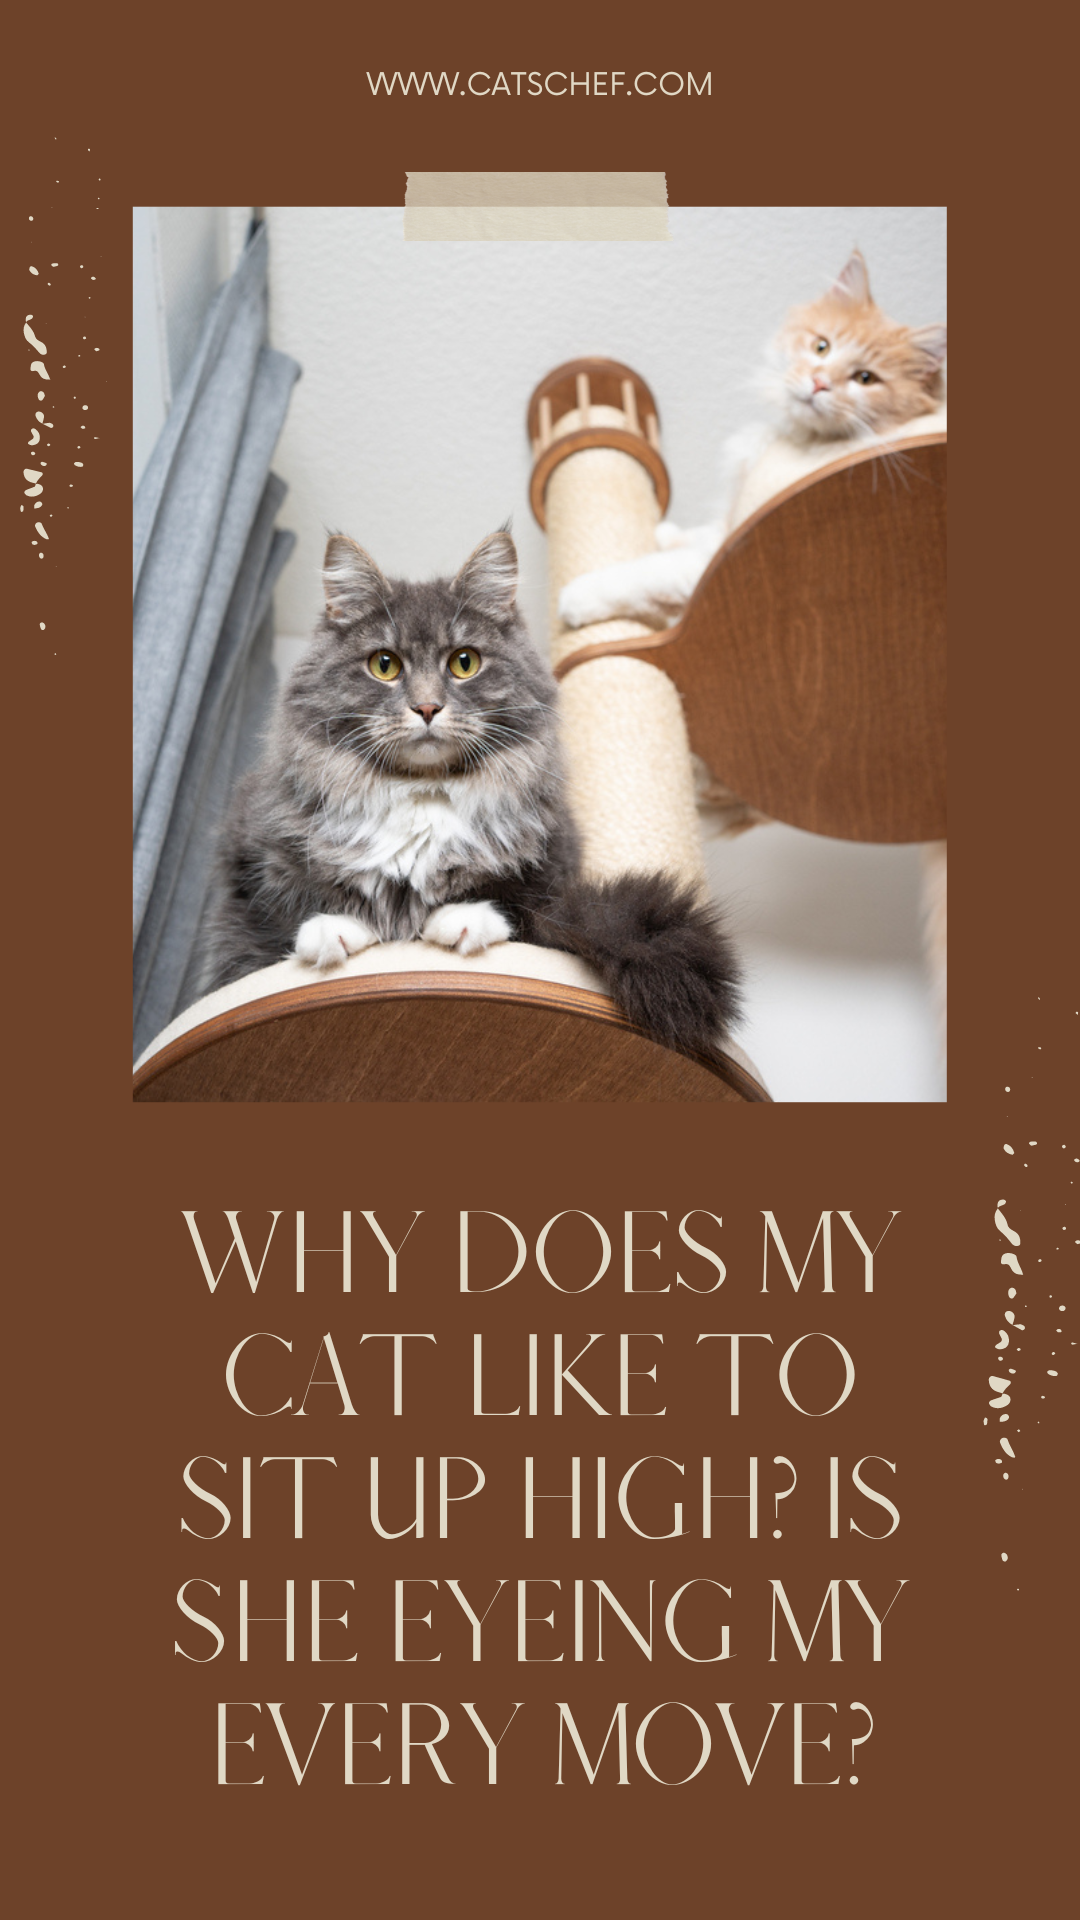 Kedim Neden Yüksekte Oturmayı Seviyor? Her Hareketimi Gözetliyor mu?